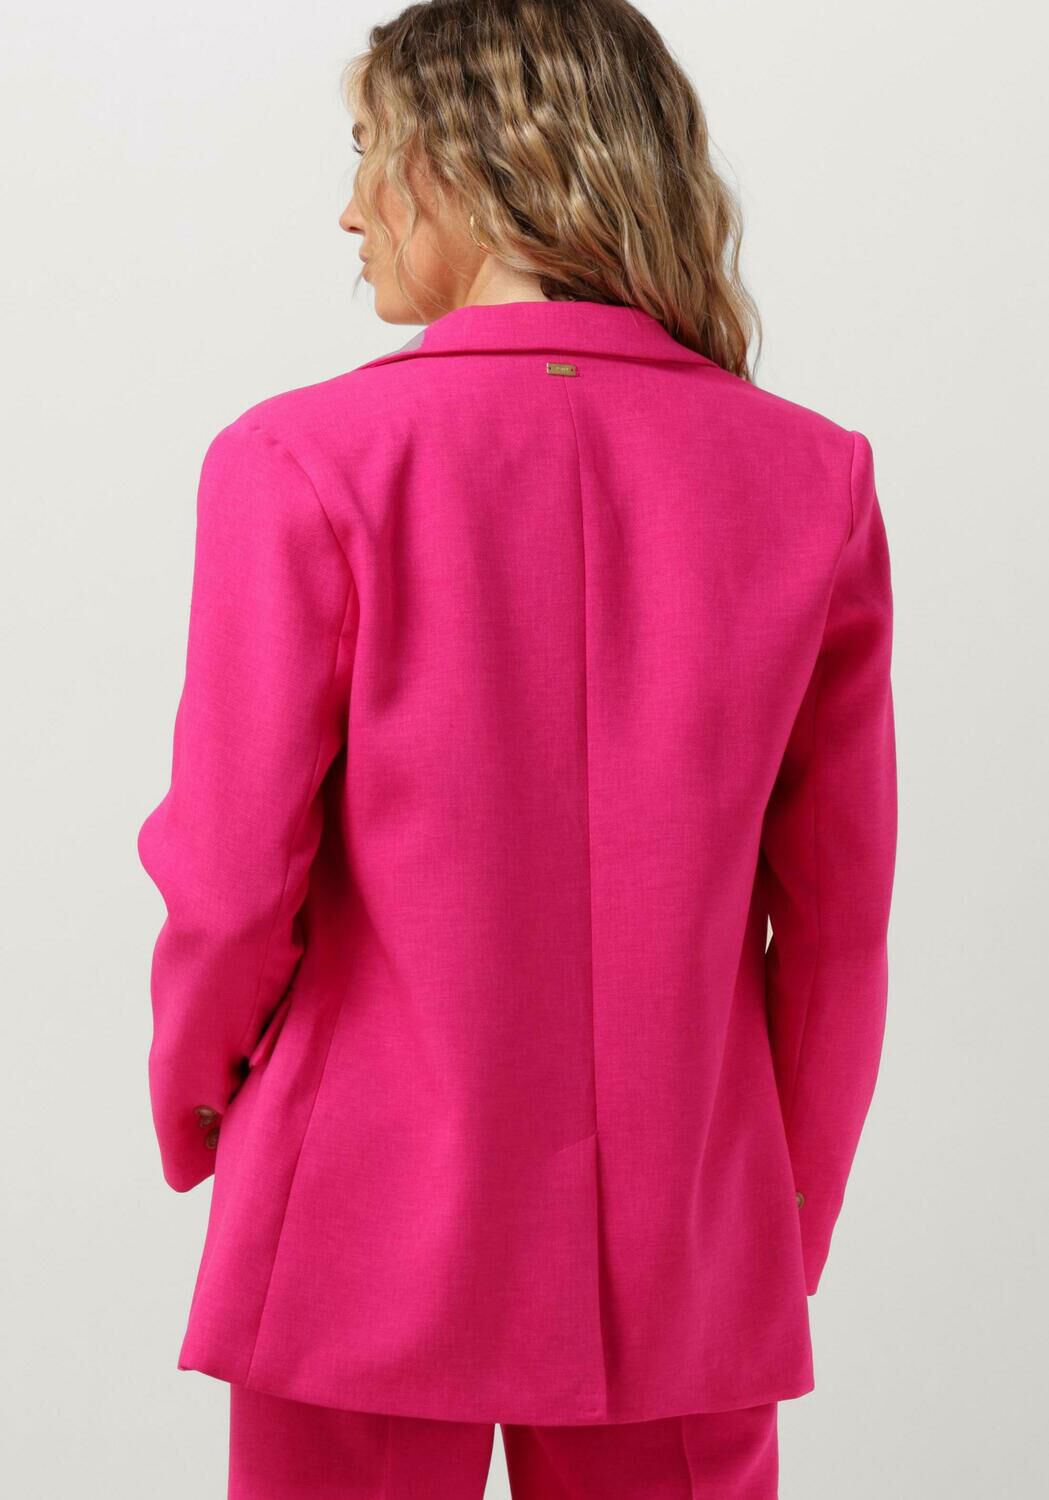 POM AMSTERDAM Dames Blazers Pink Glow Blazer Roze